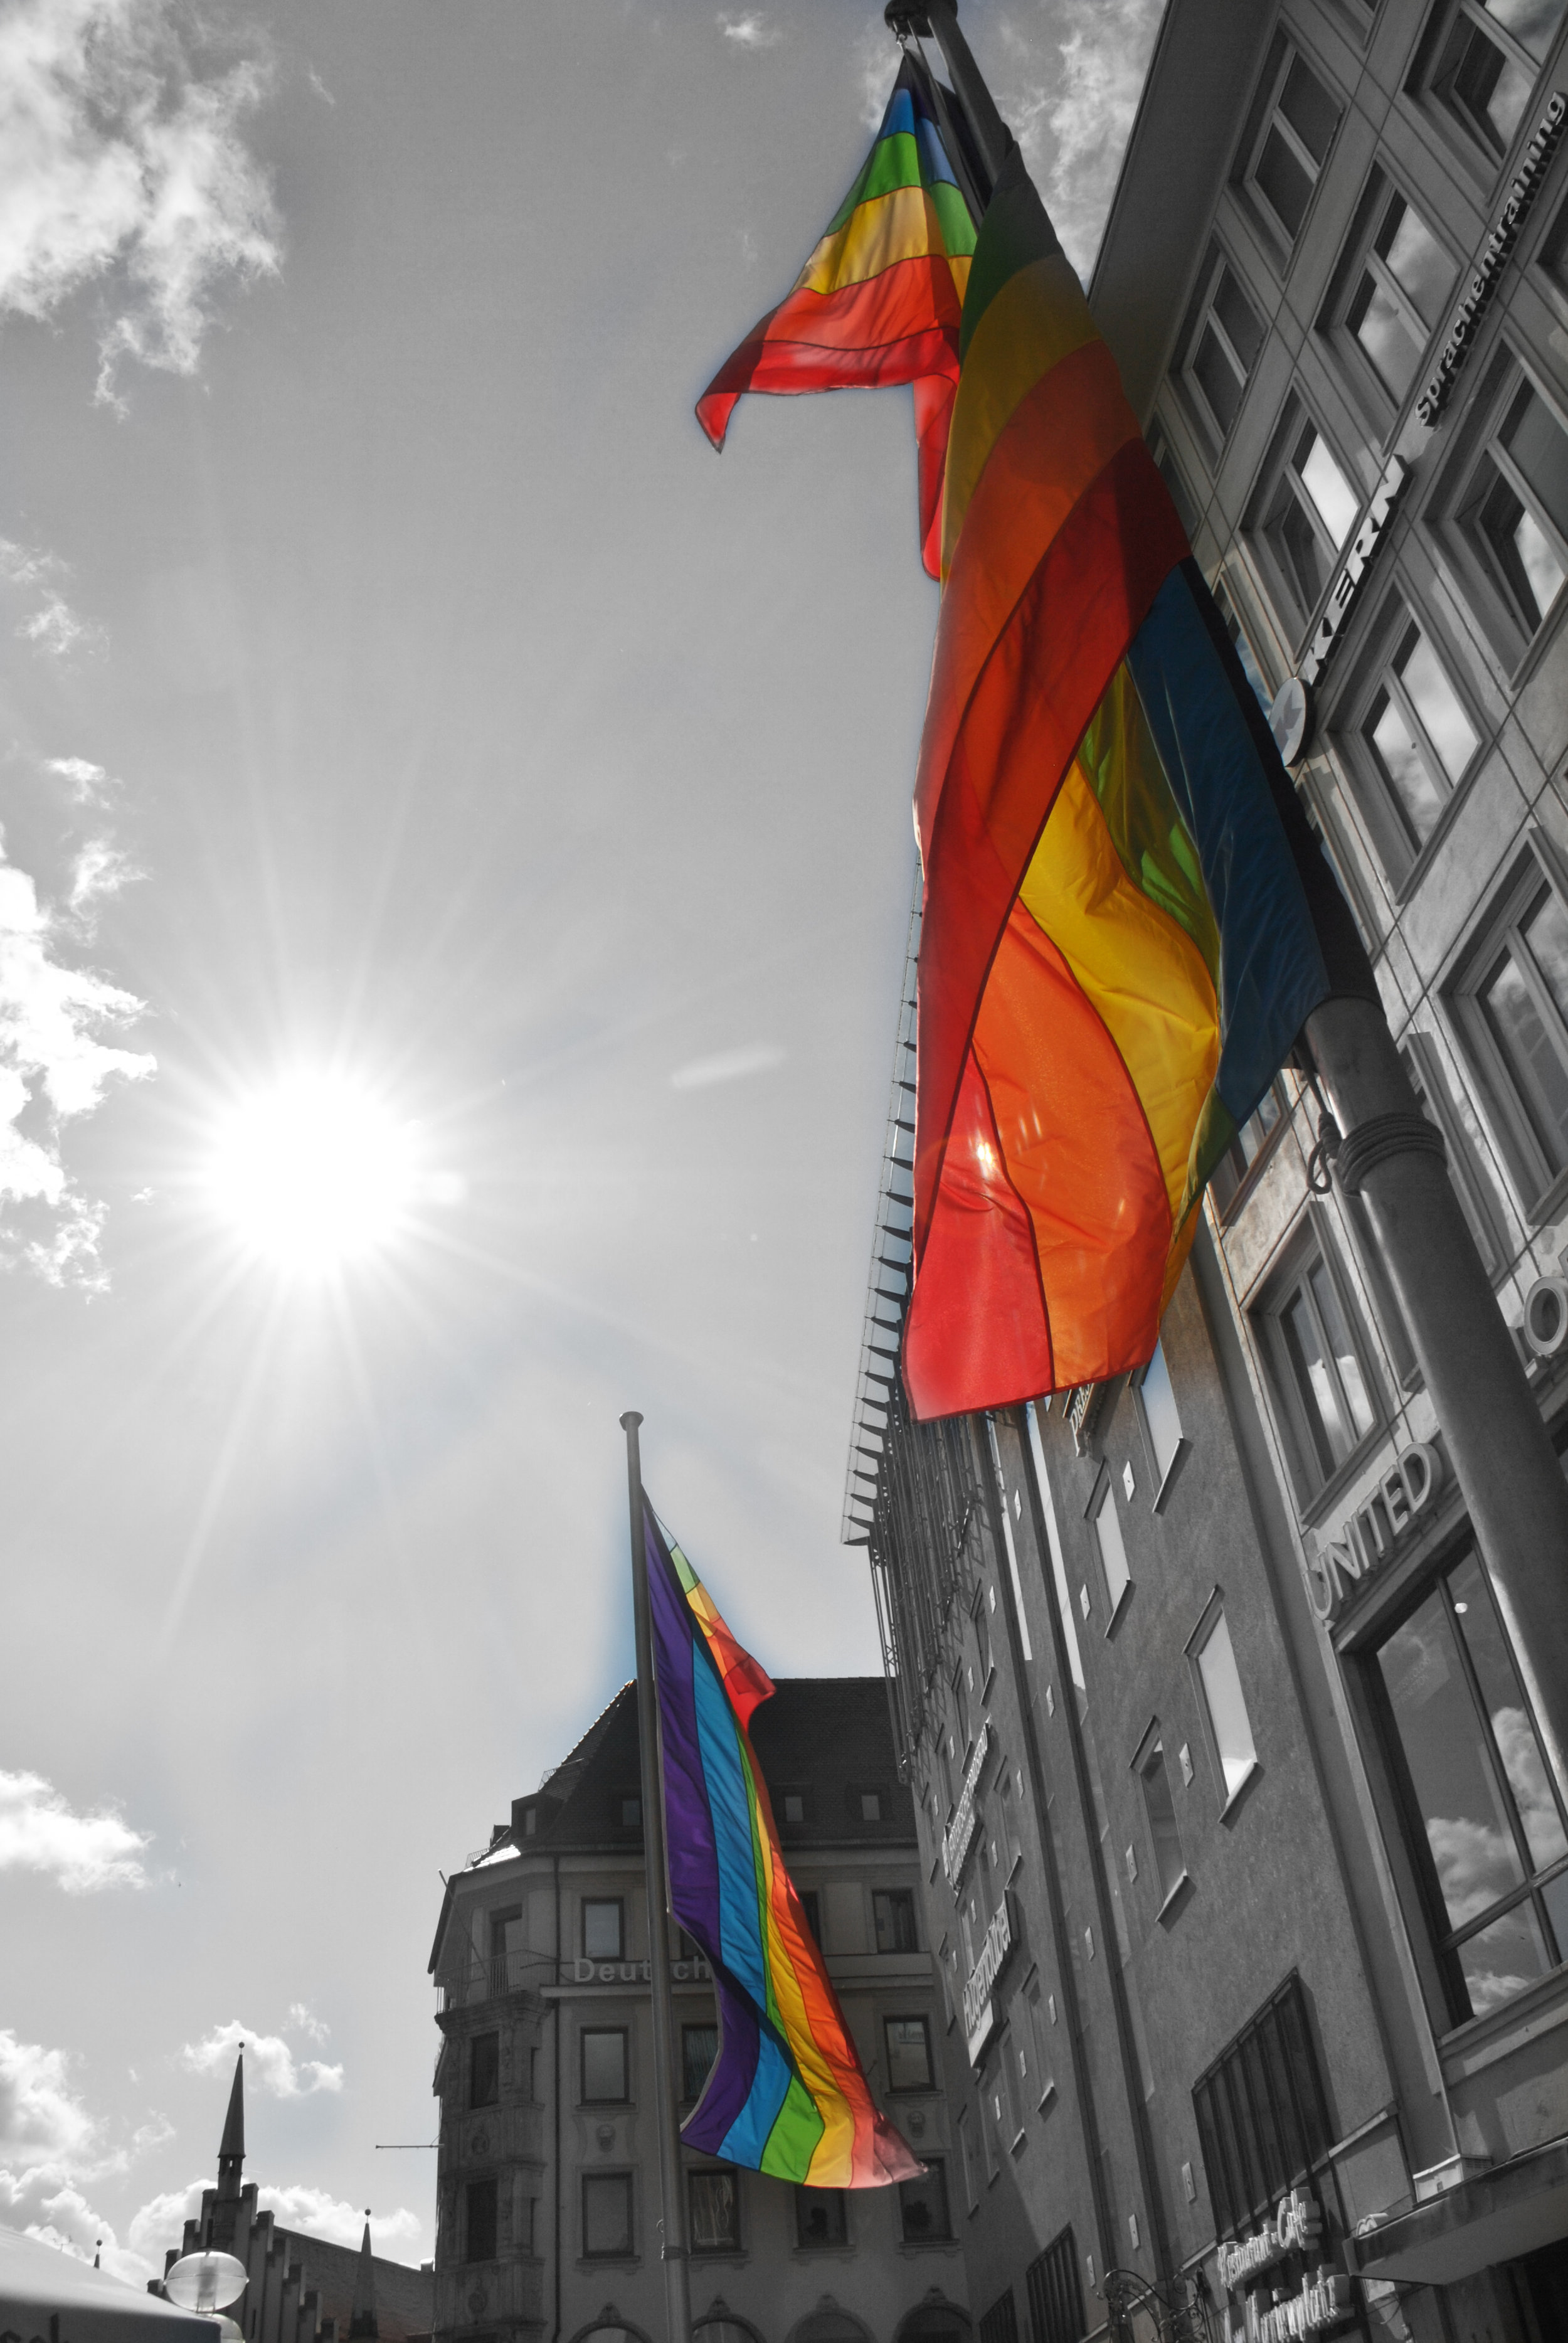   "Pride"   Munich, Germany || July 2012 || Nikon D3000 